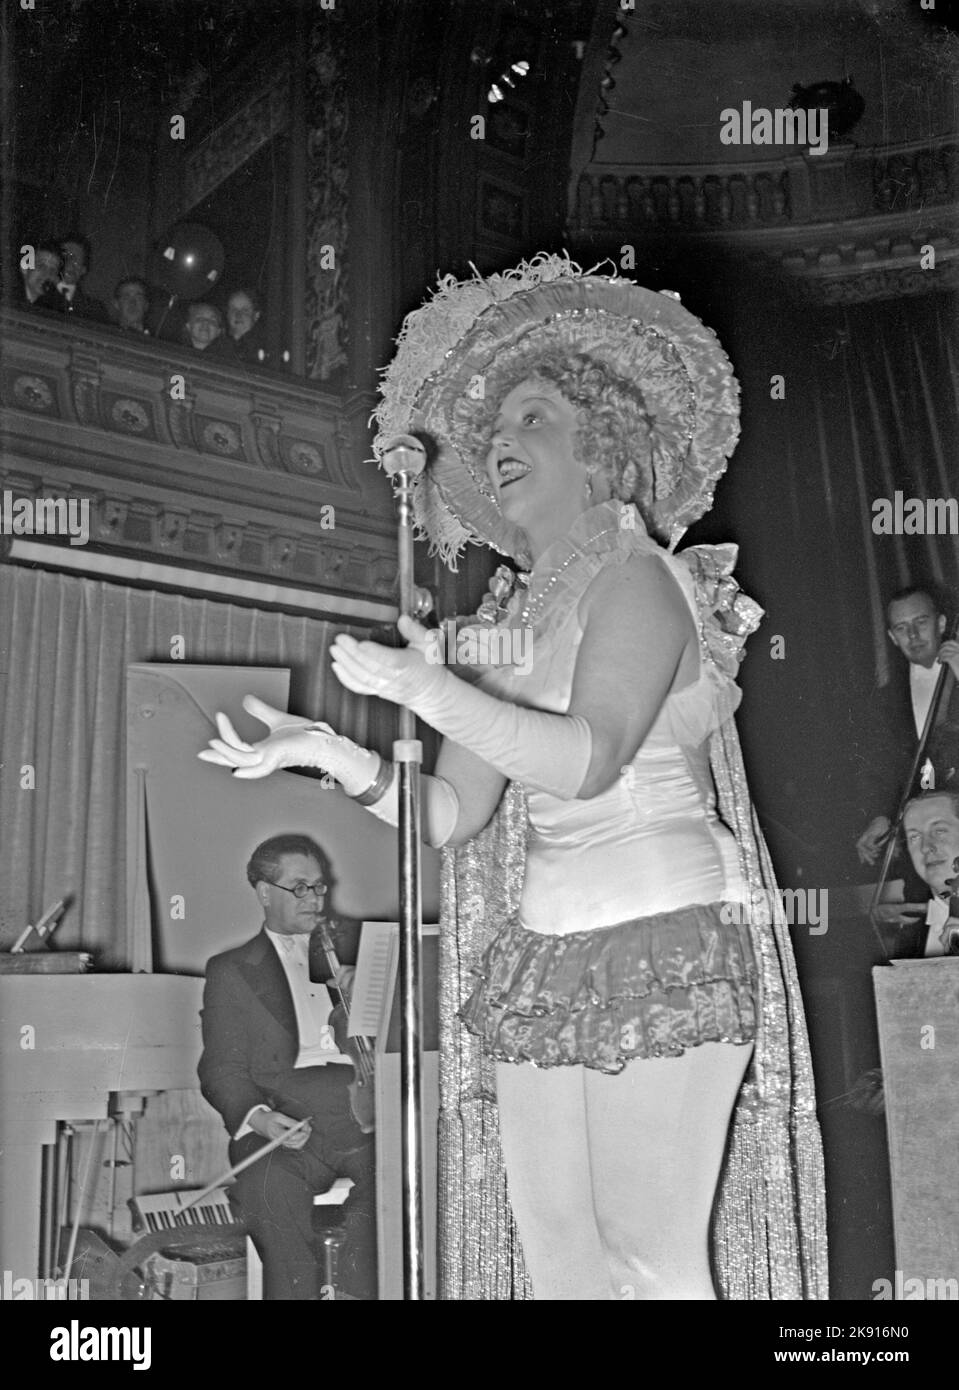 Dans le 1930s. L'actrice et chanteuse Carin Swensson sur scène interprète un acte pour le public au restaurant Berns à Stockholm Suède 1939. Kristoffersson réf. 17-8 Banque D'Images